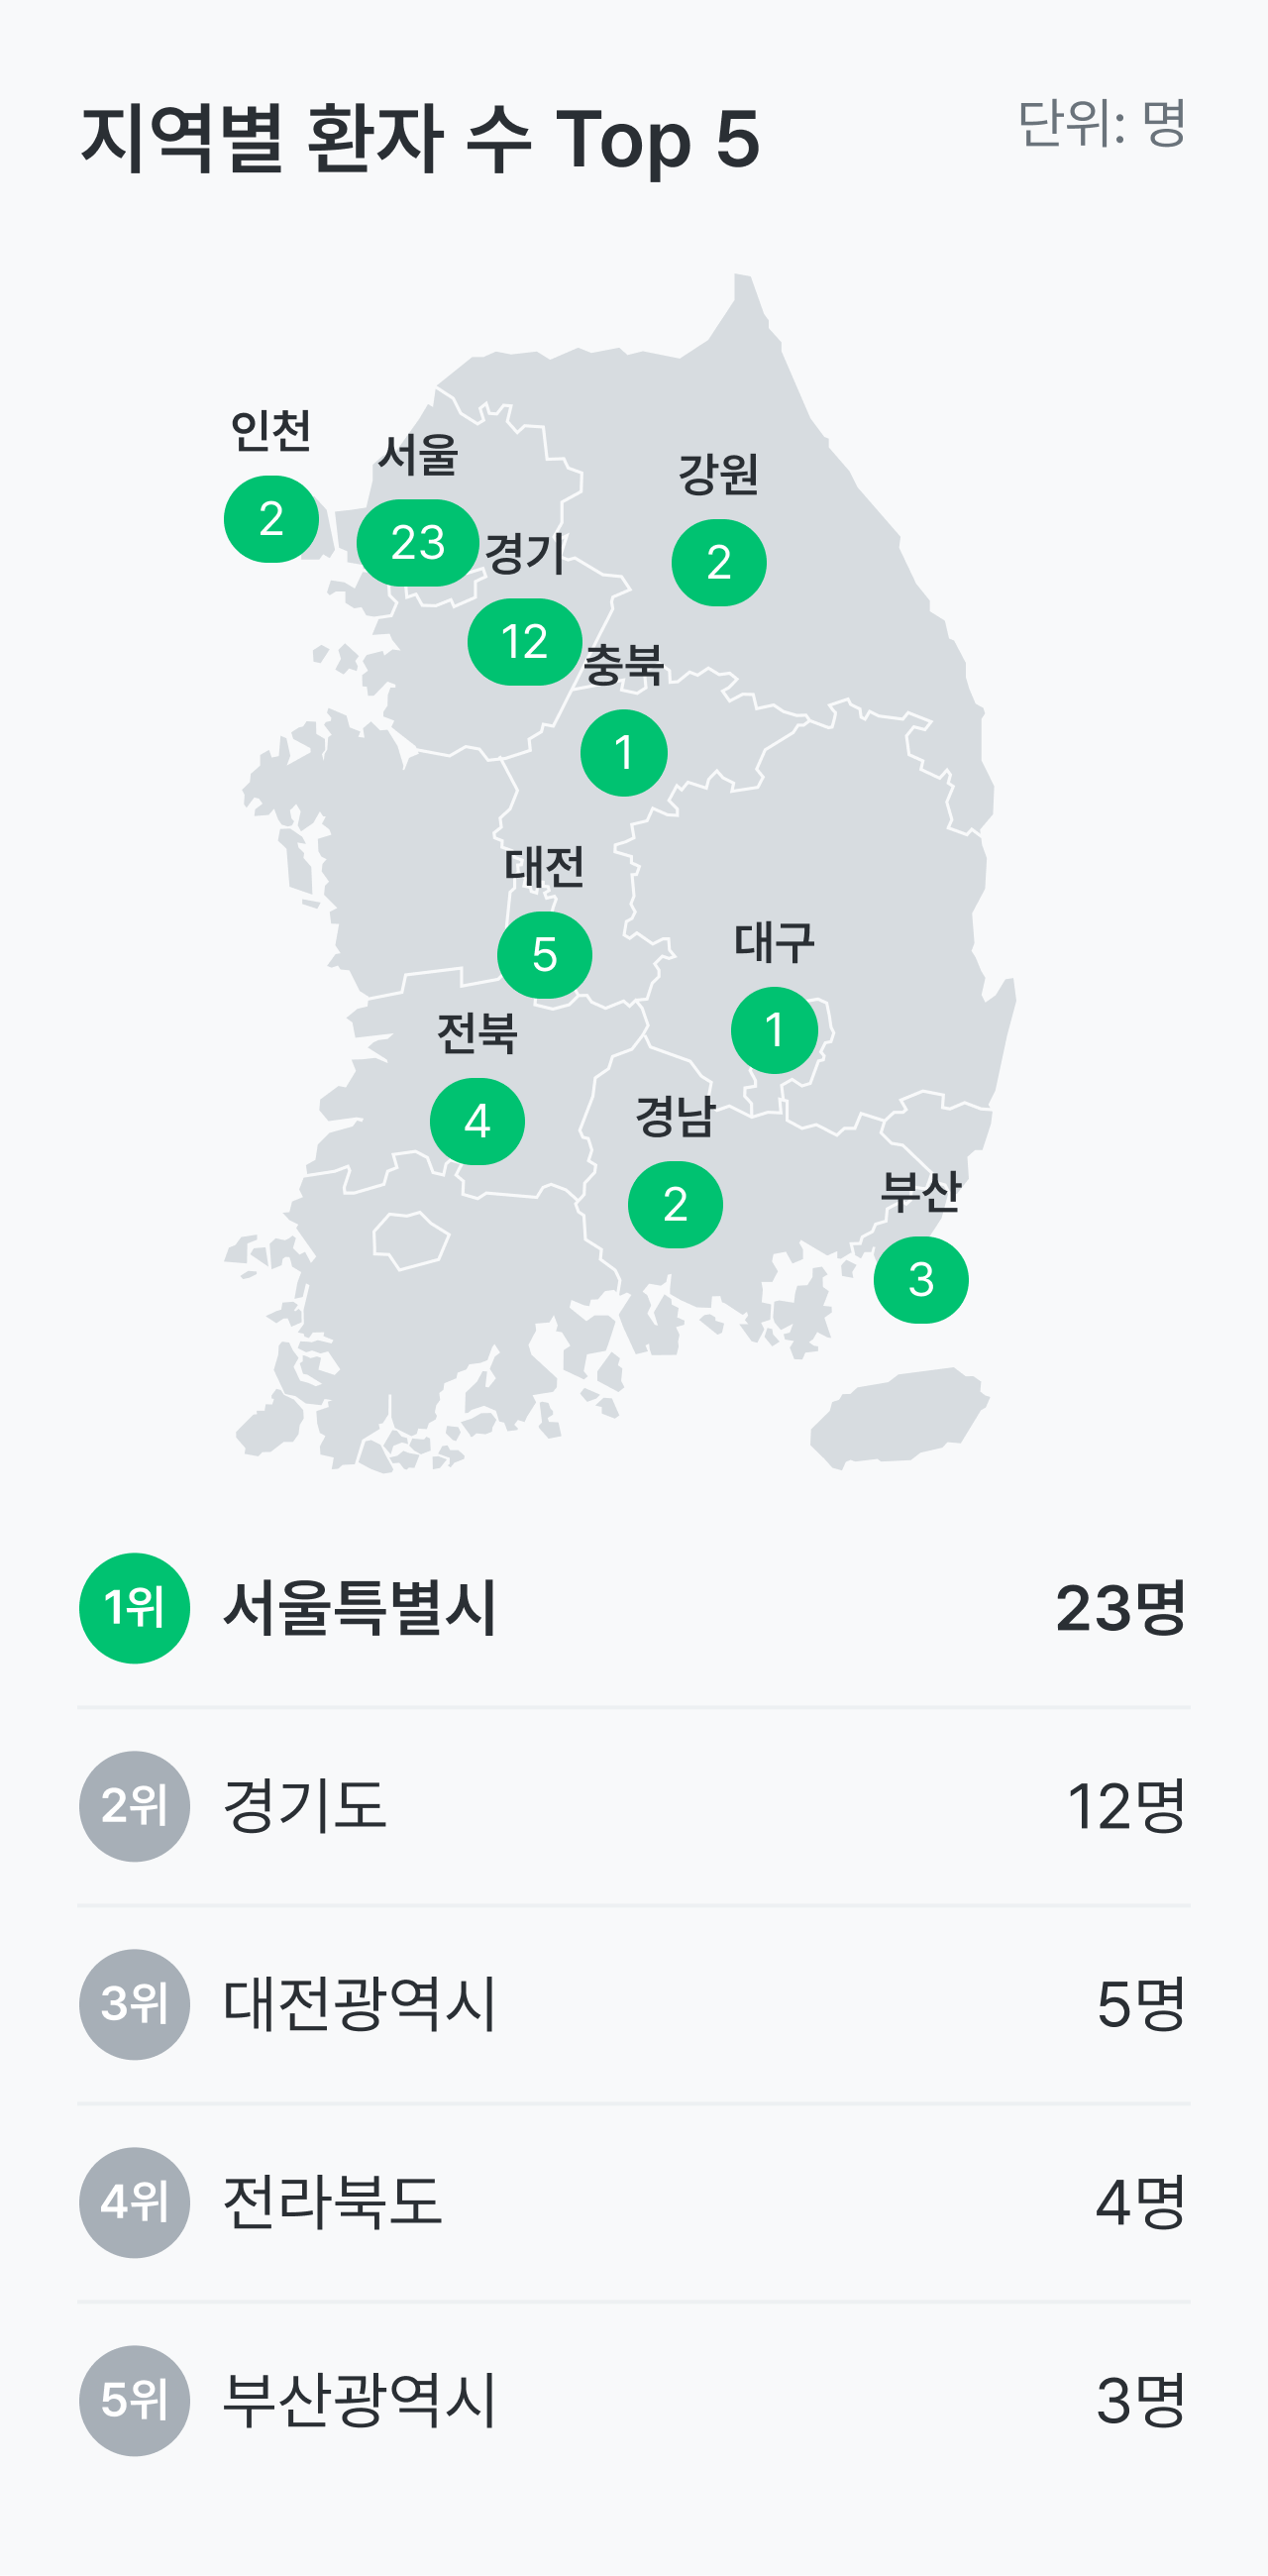 다발성 경화증 환자의 거주 지역은 서울특별시가 23명으로 가장 많았고 경기도, 대전광역시가 뒤를 이었어요.